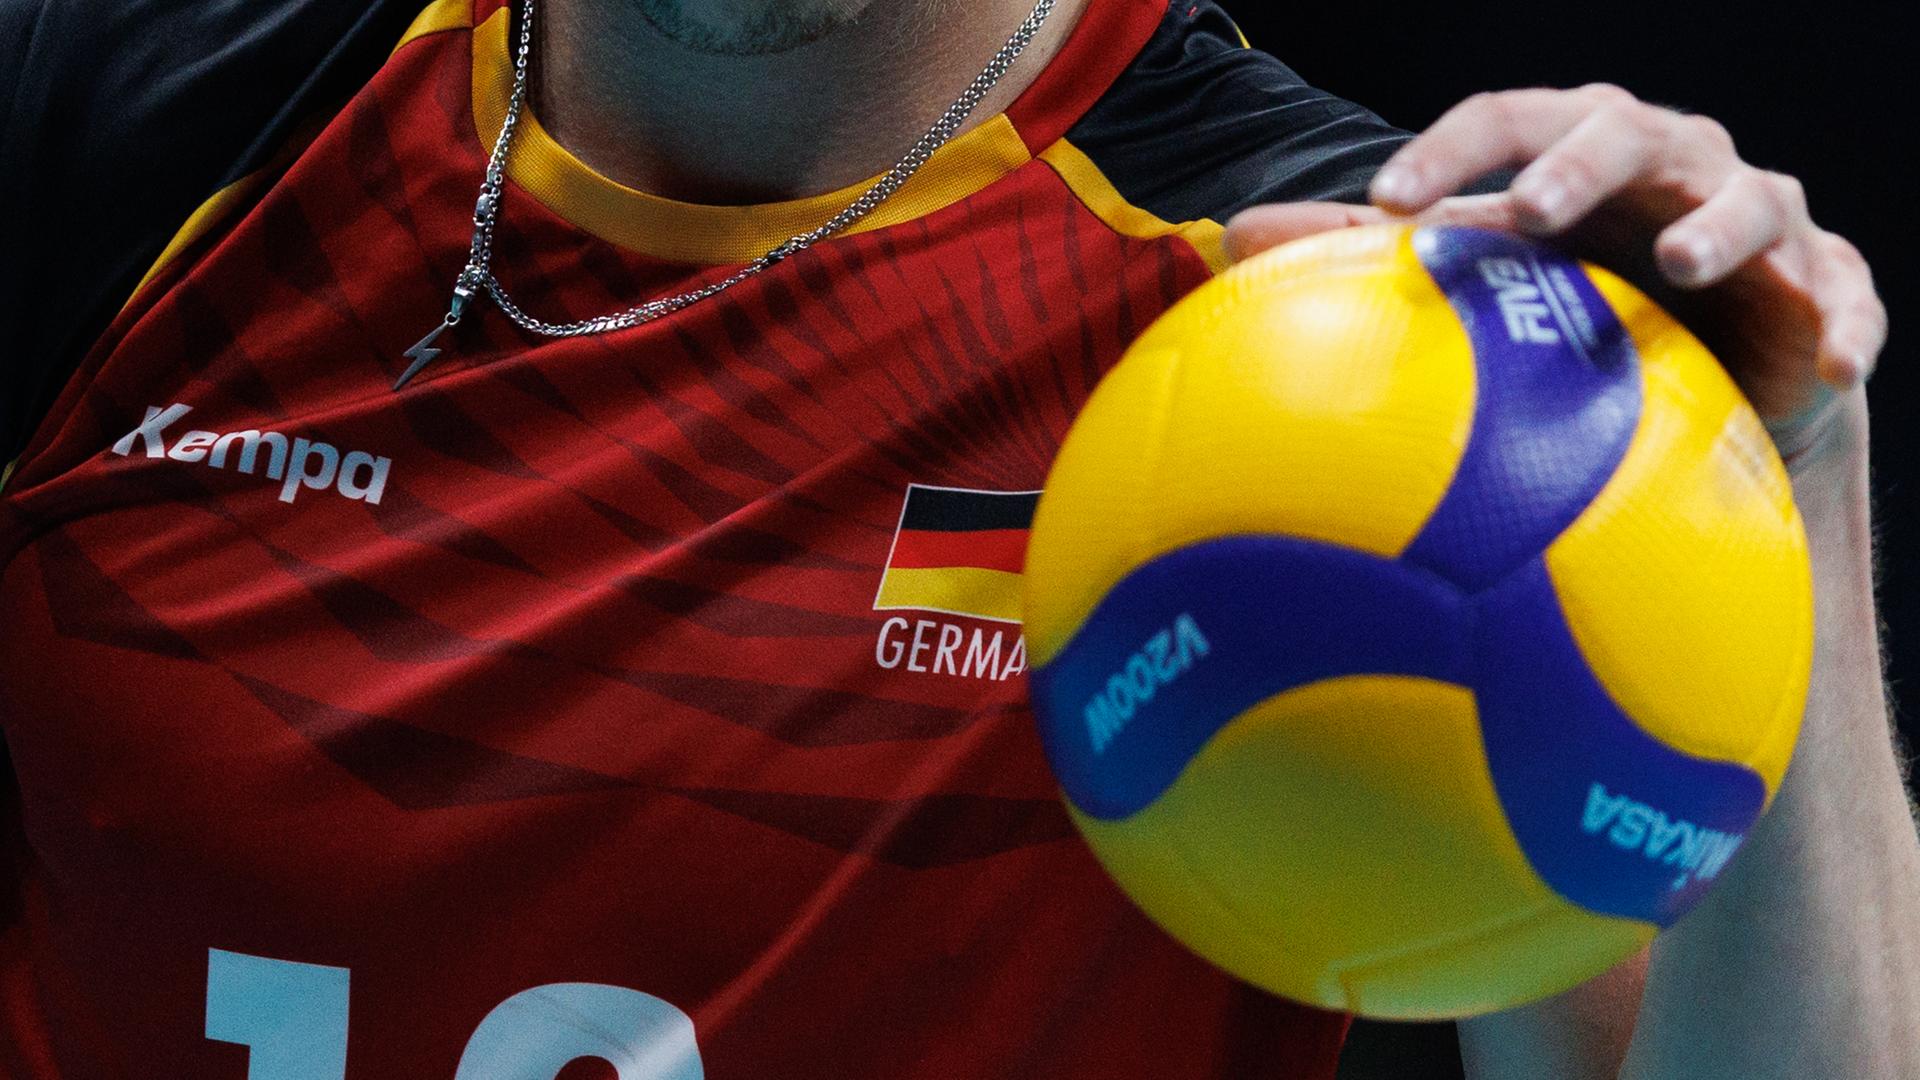 Trikot von Anton Brehme (GER) und Volleyball im Close-Up am 01.10.23.